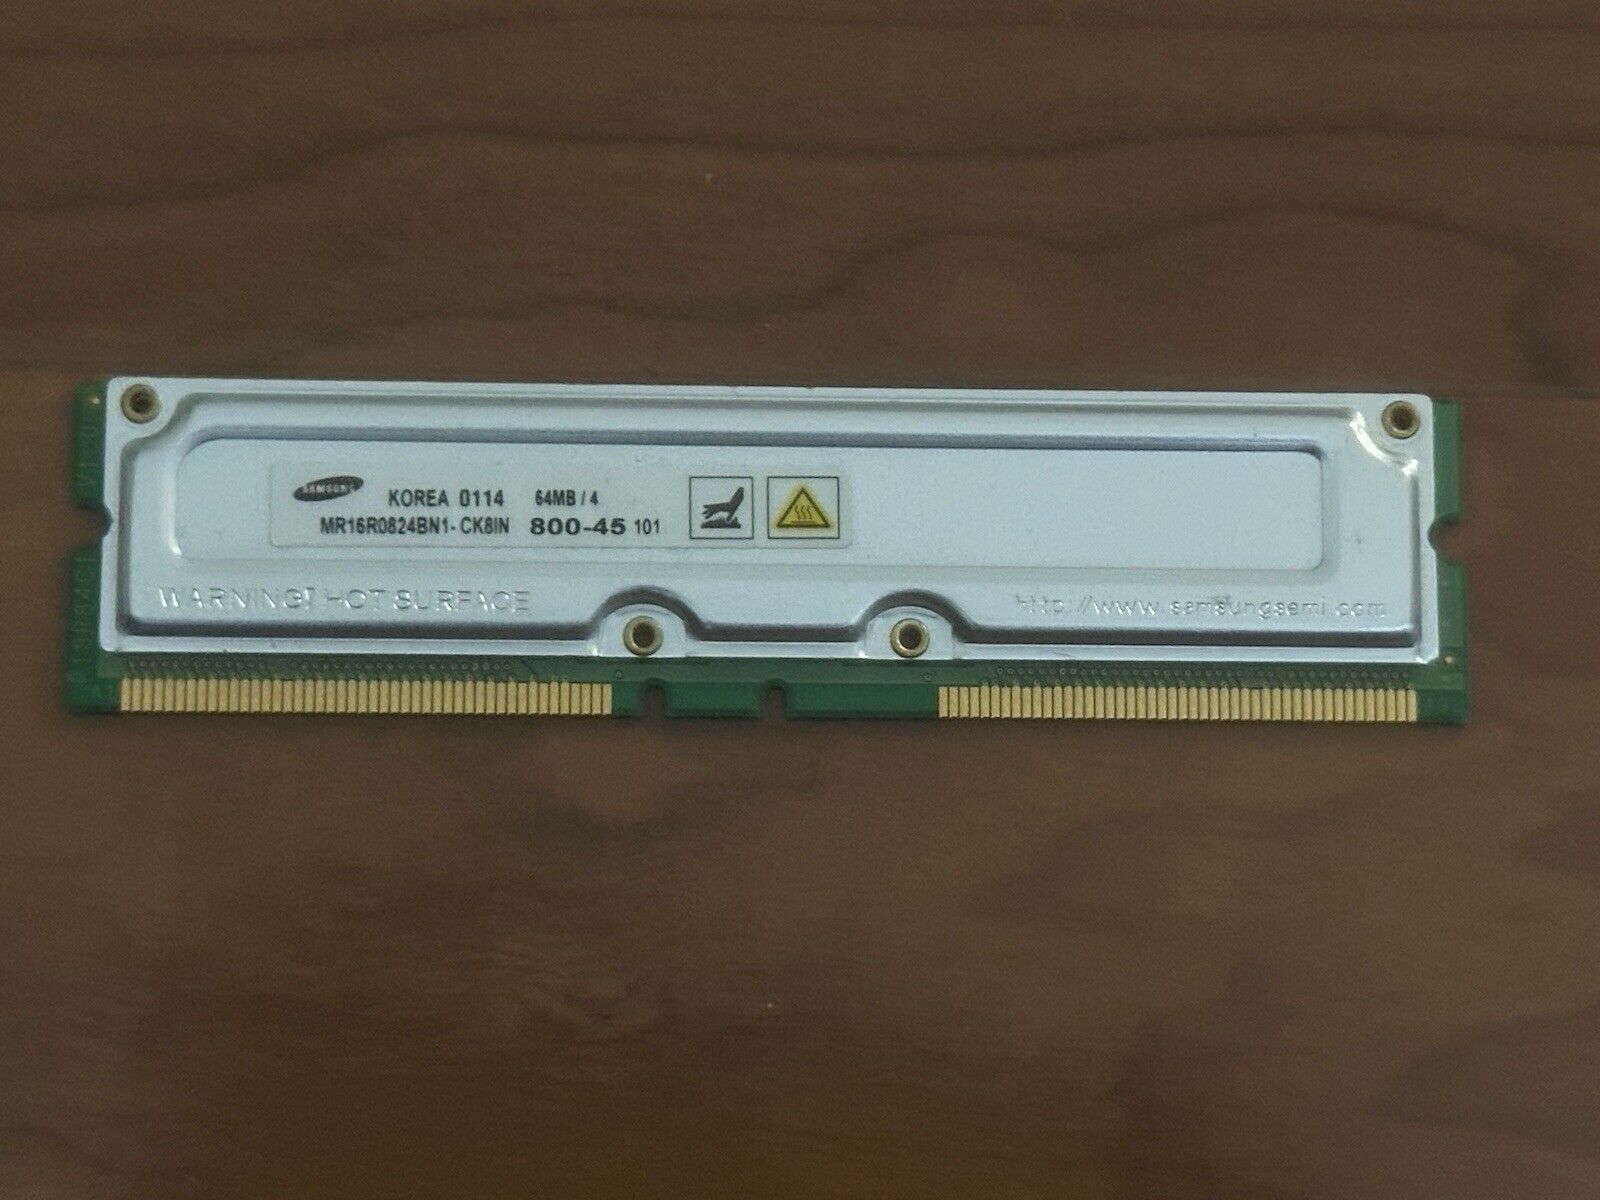 Samsung 128MB 2x 64MB/4 Rambus RDRAM 800-45 MR16R0824BN1